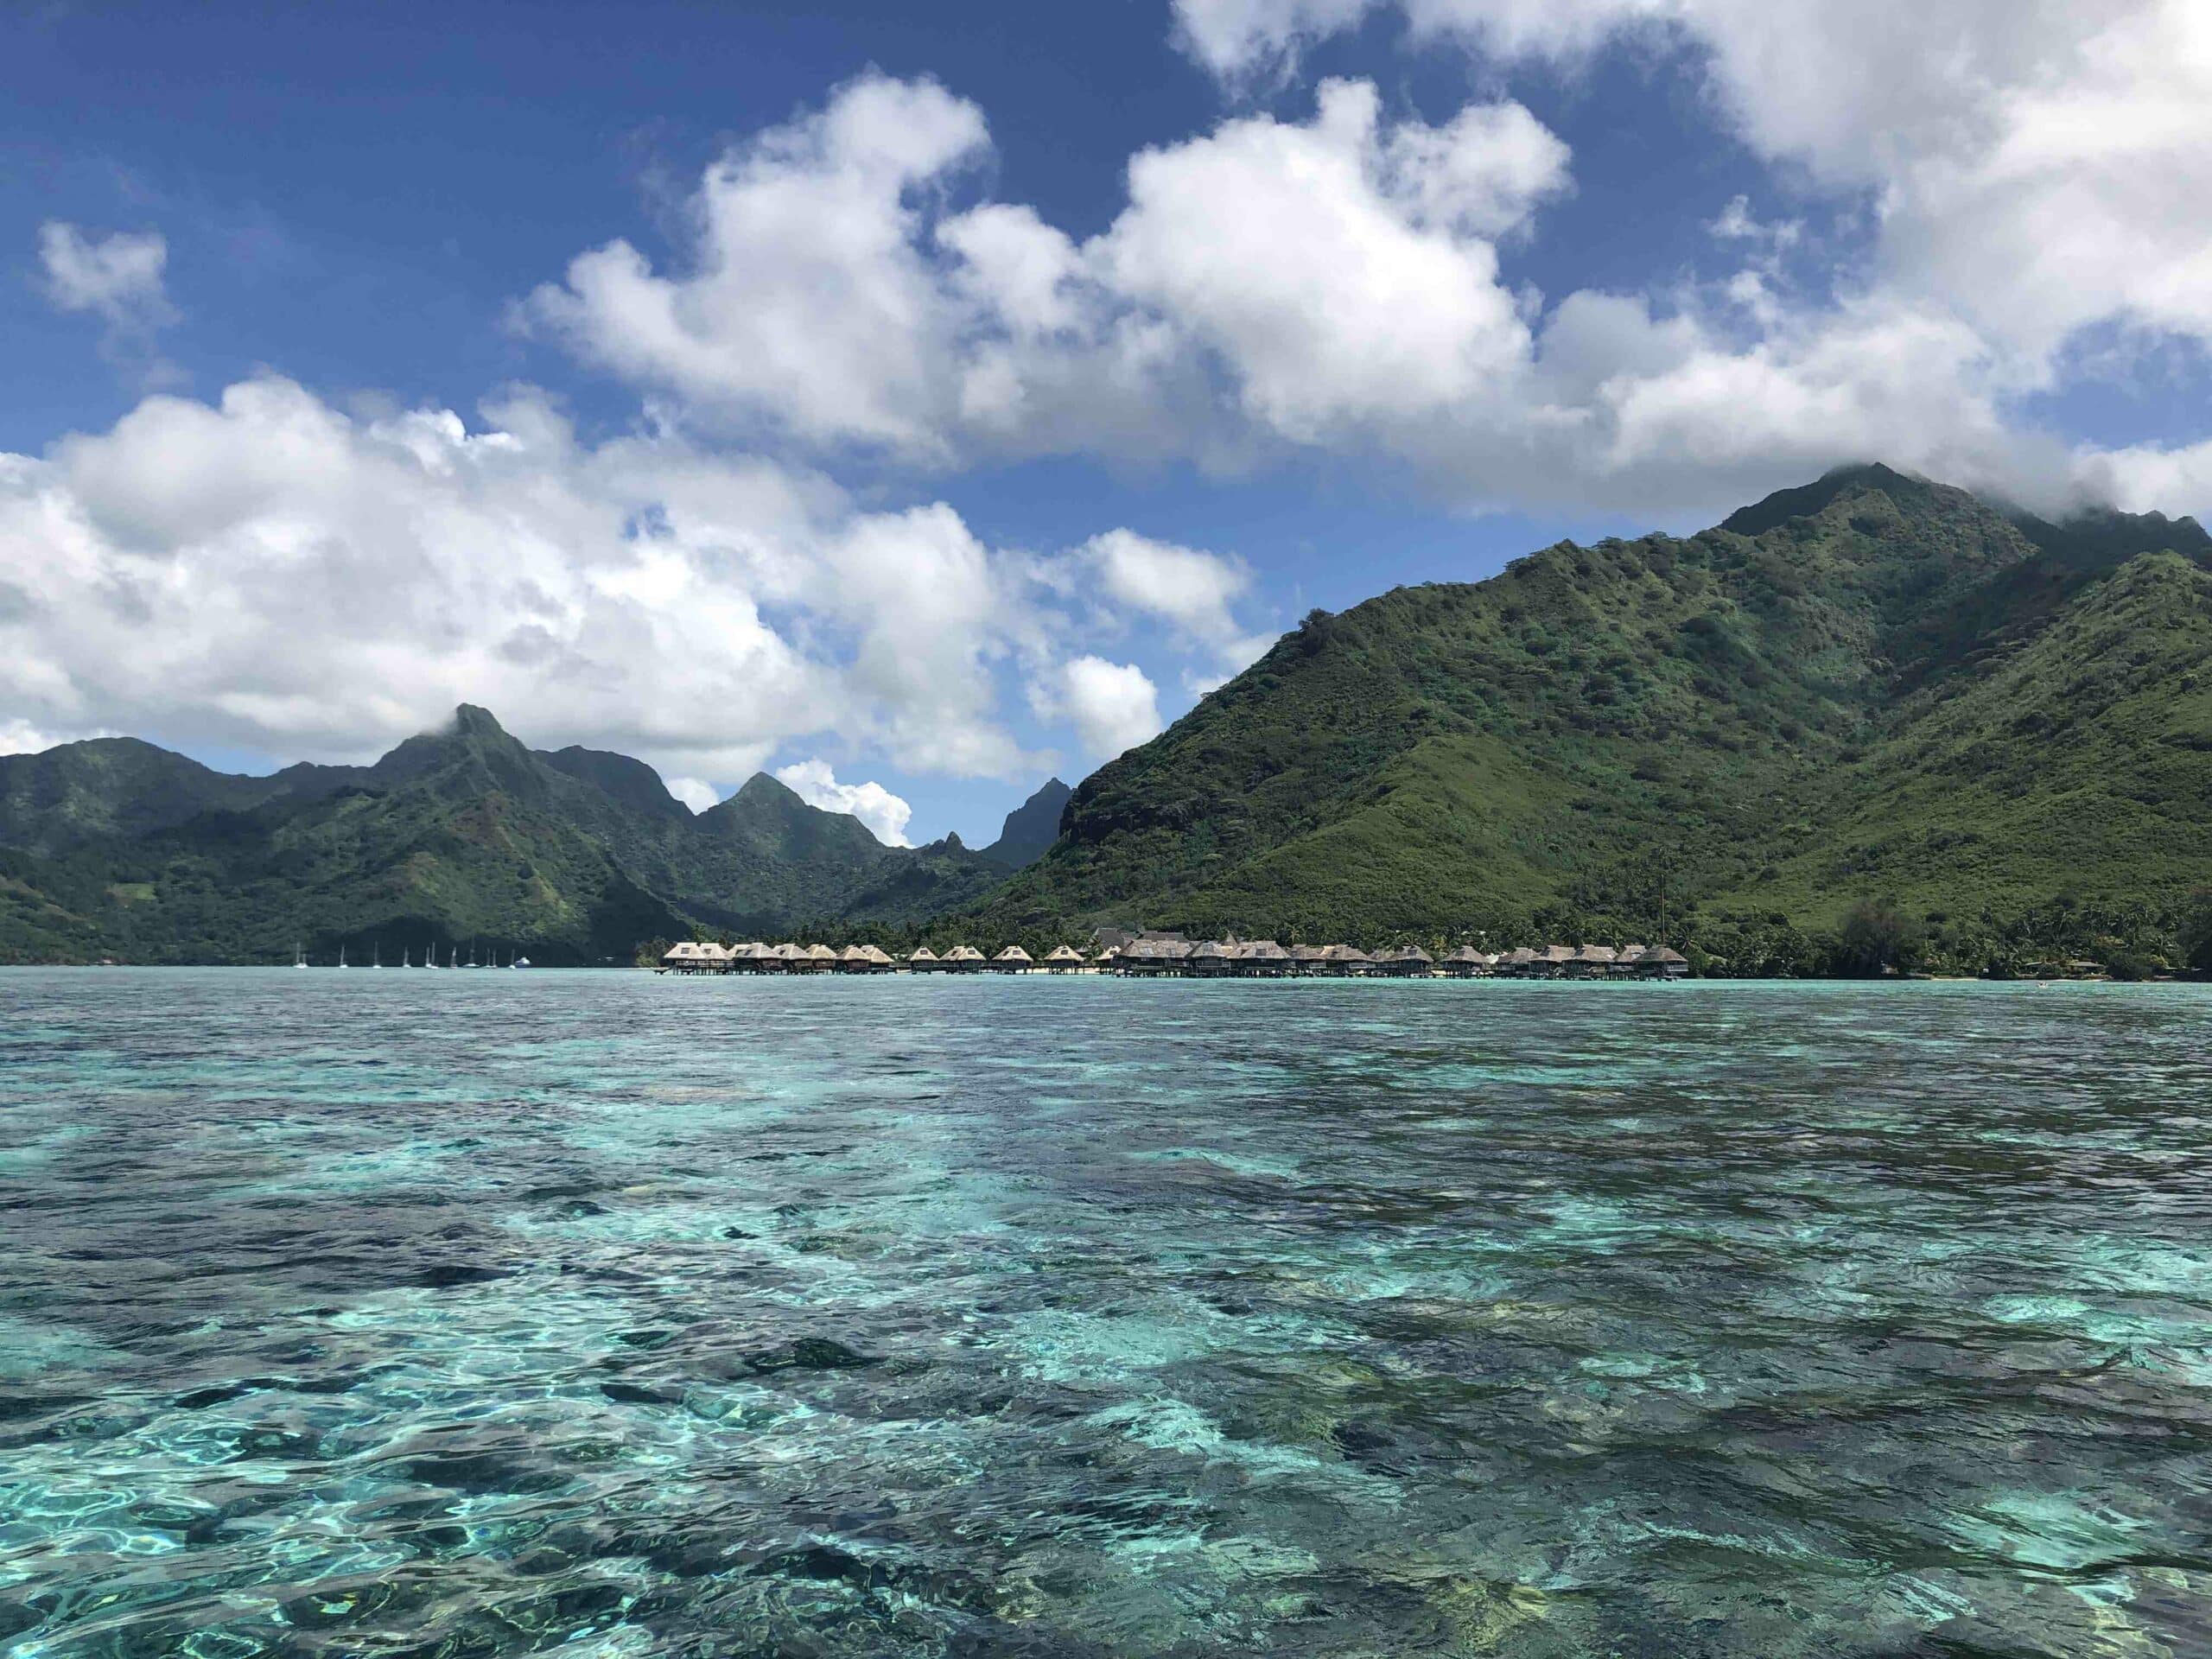 What work in Tahiti?